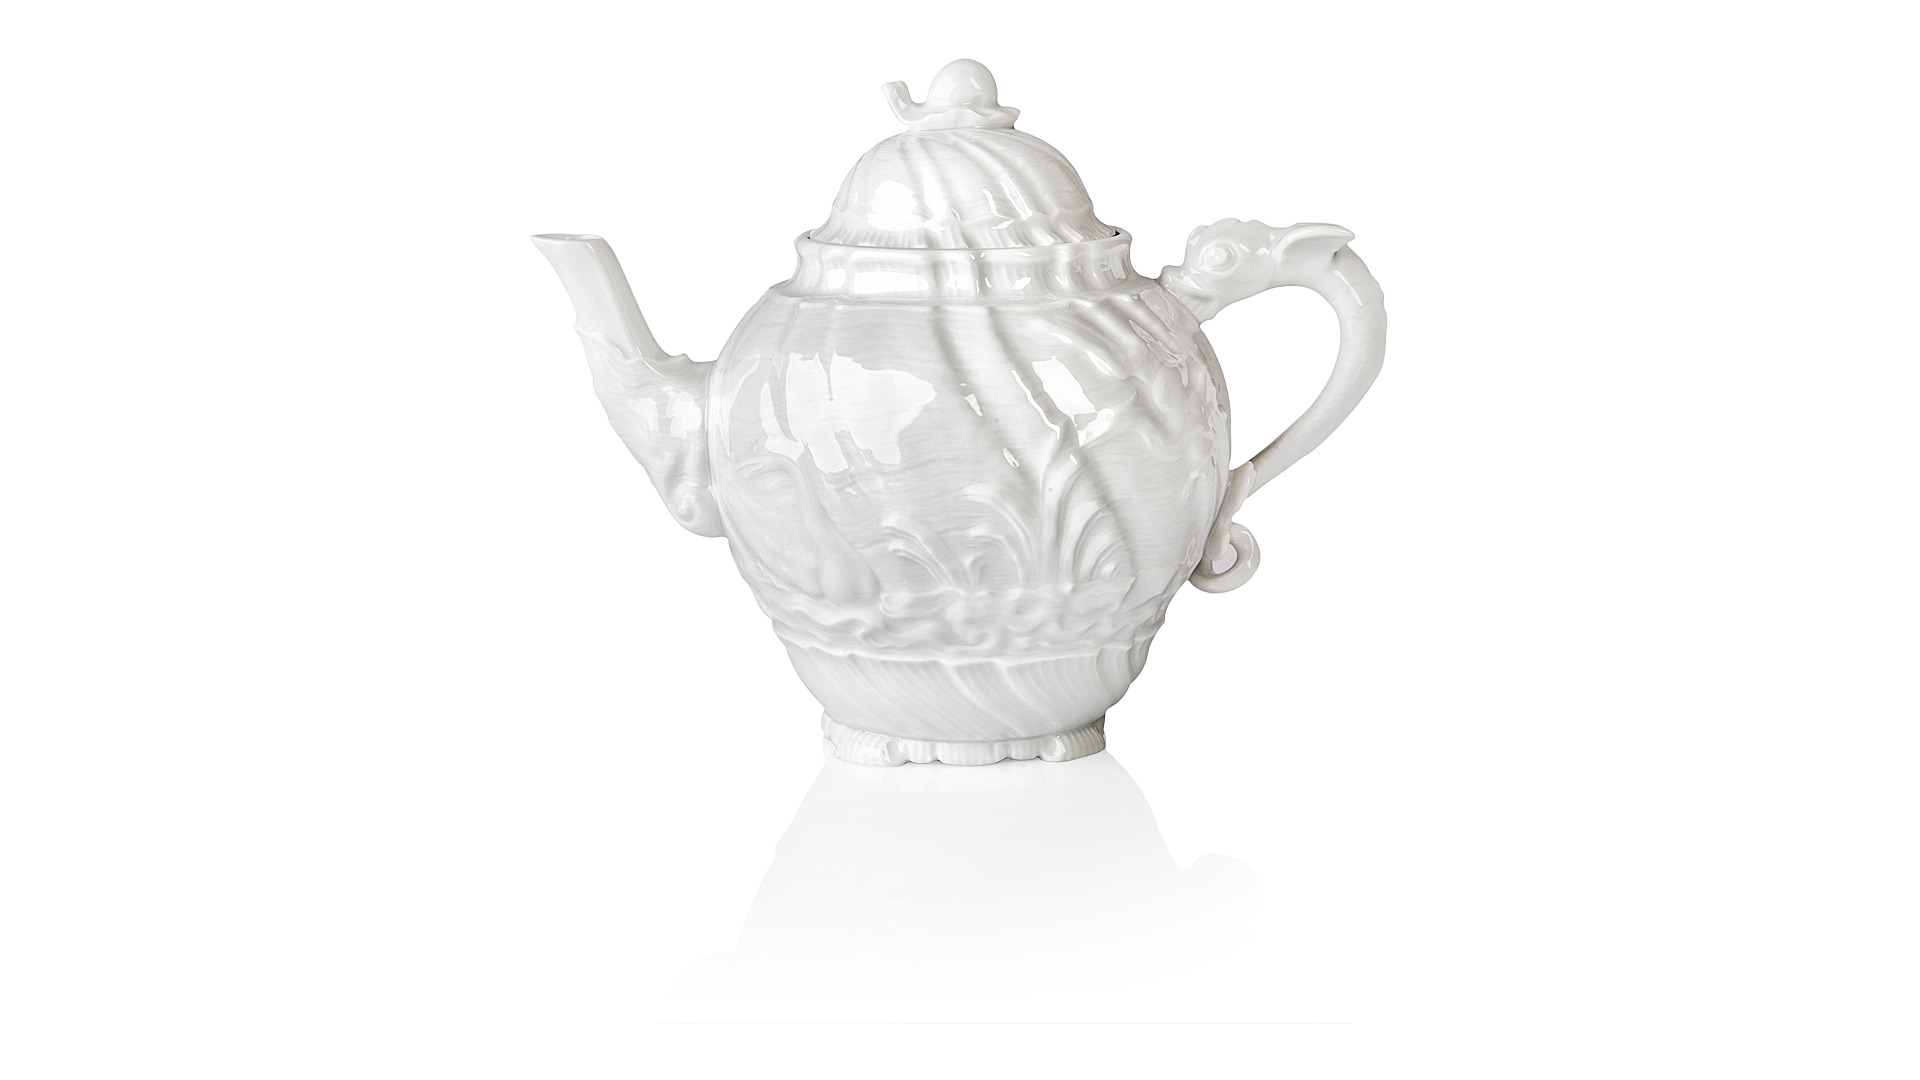 Сервиз чайный Meissen Лебединый сервиз, белый рельеф на 6 персон 15 предметов, фарфор